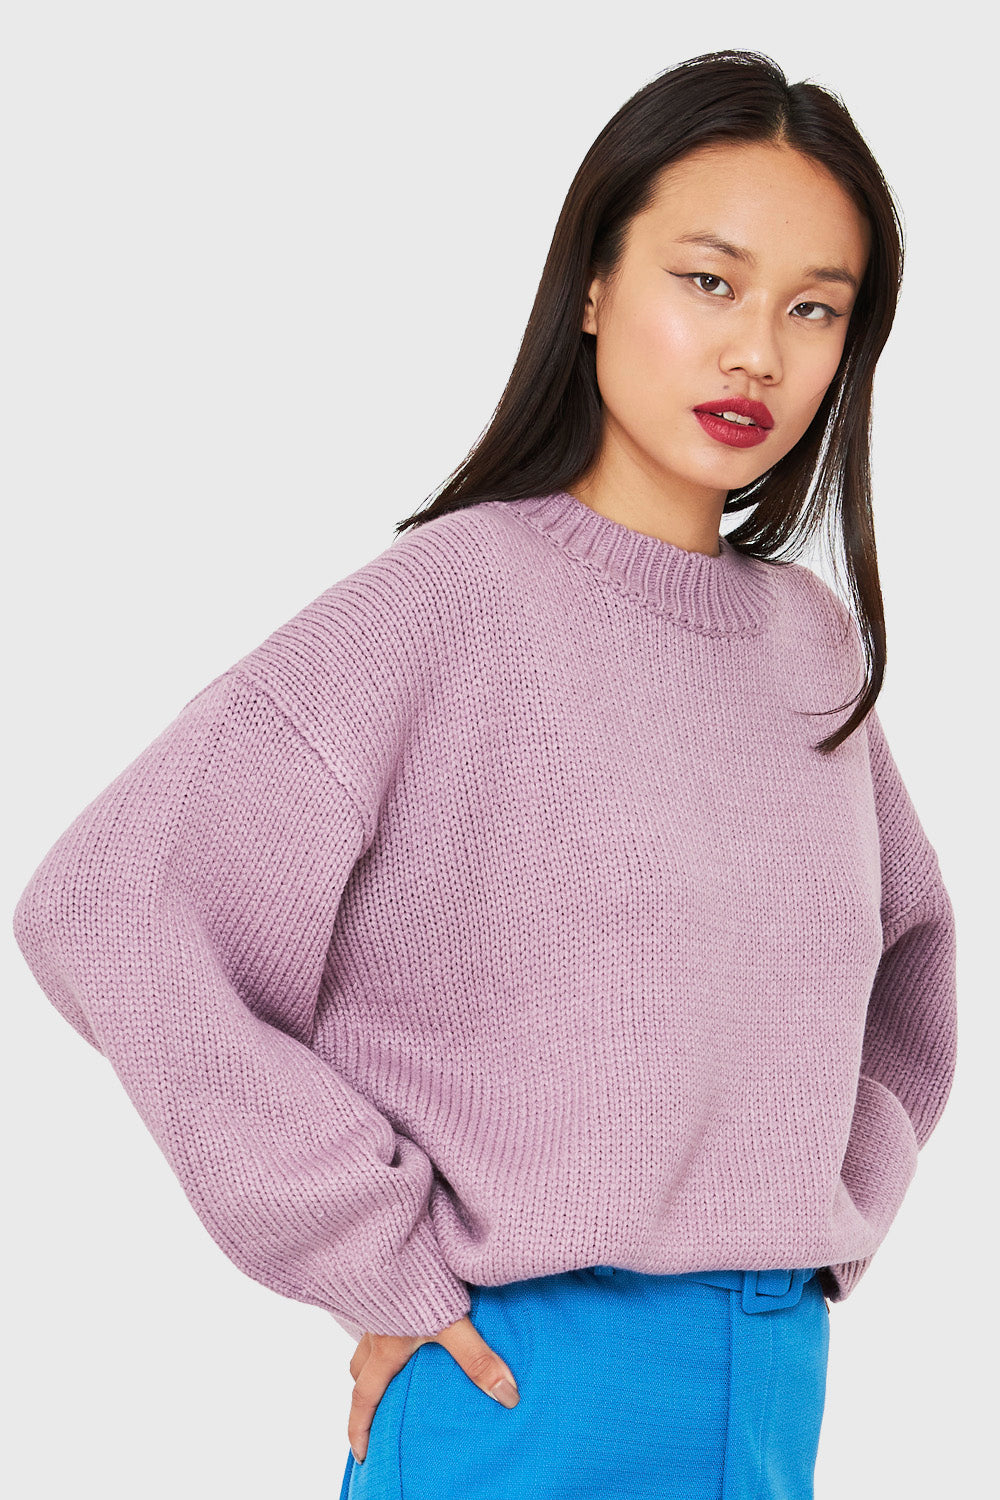 Sweater Básico Holgado Lila